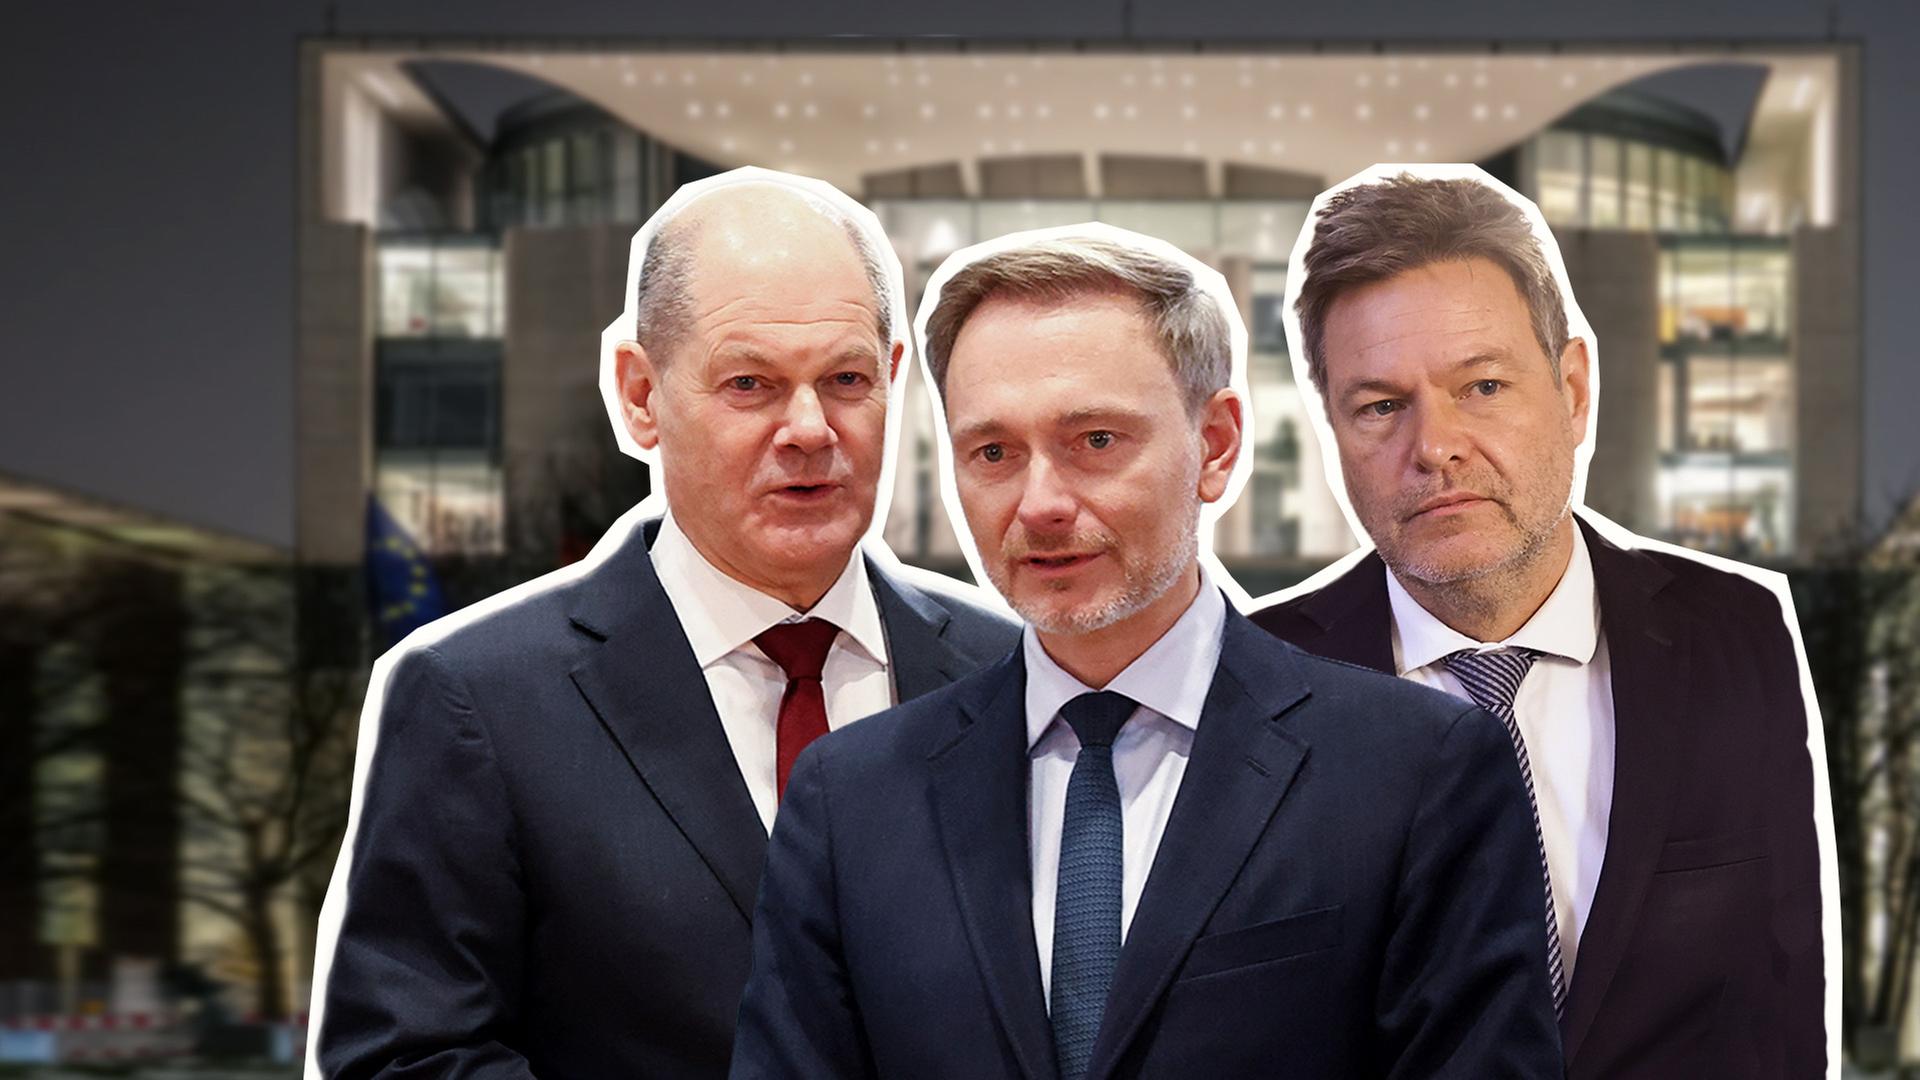 Olaf Scholz, Christian Lindner und Robert Habeck als Ausschnitte vor Regierungsgebäude